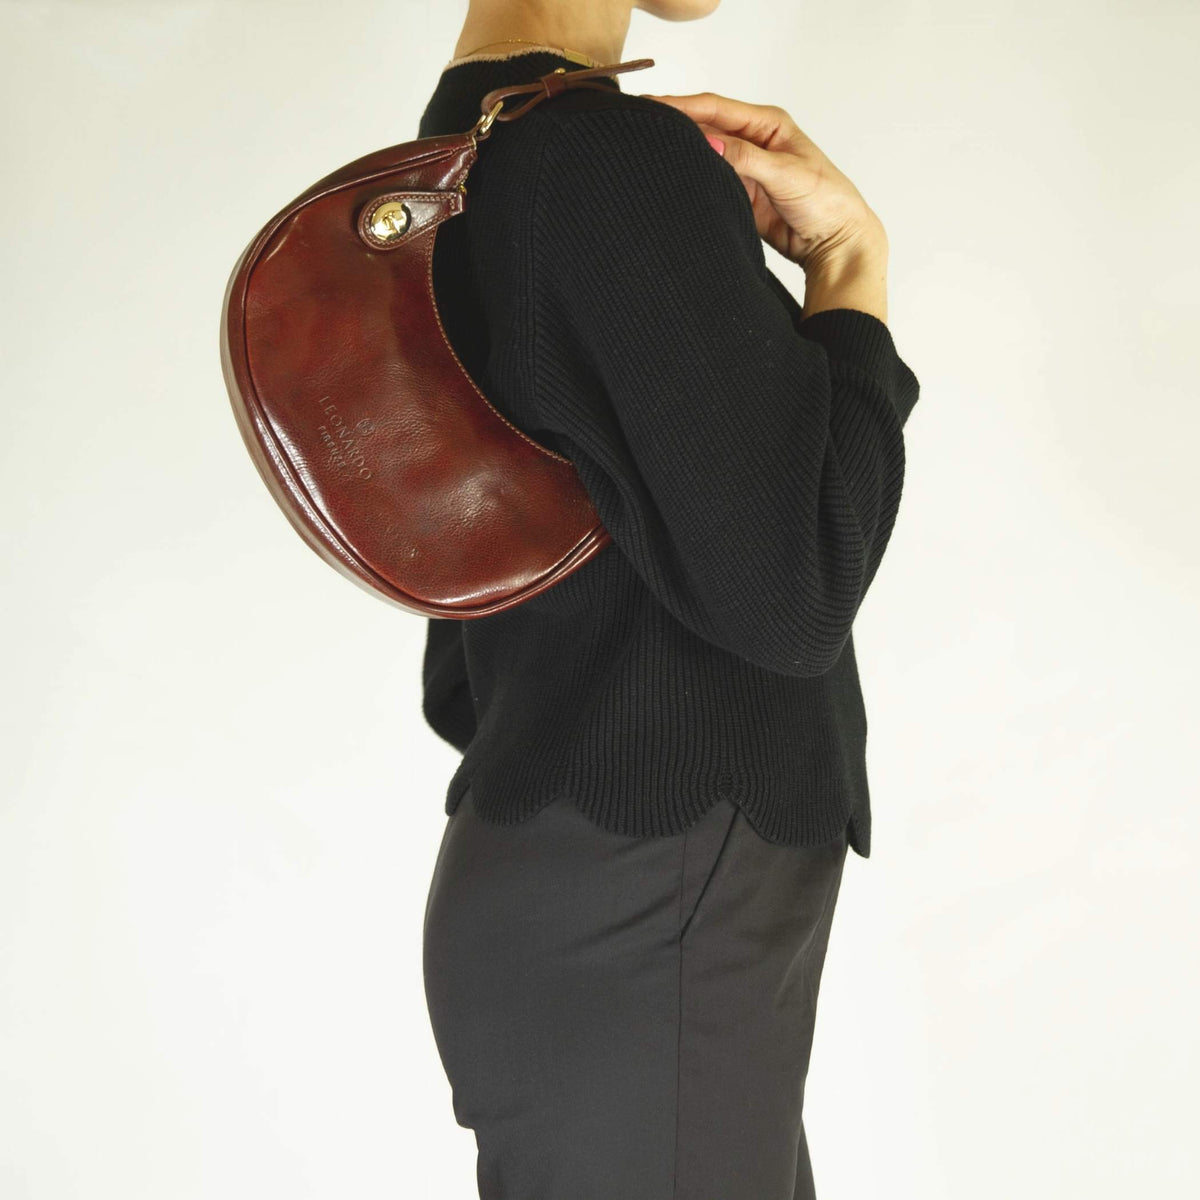 Jane shoulder bag in brown leather with removable shoulder strap